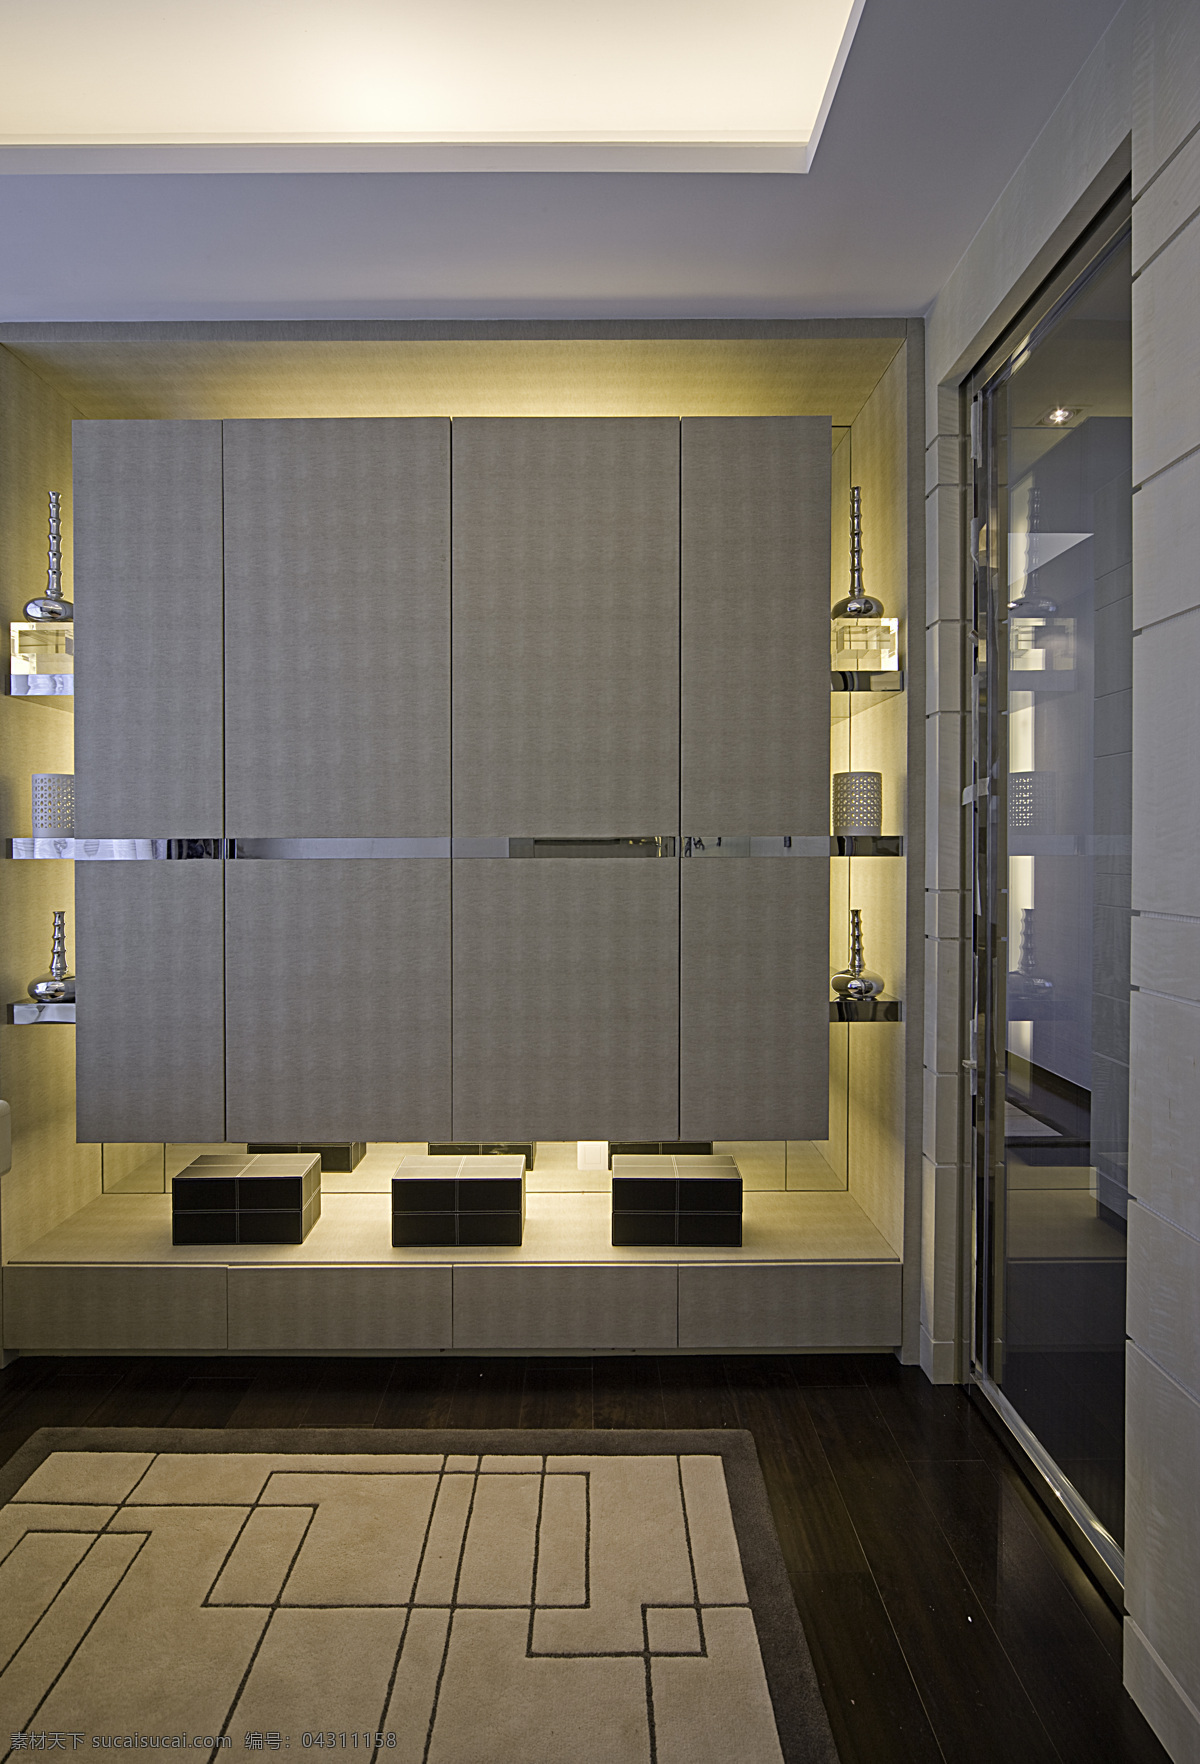 客厅 房间 3d 效果图 室内 3d渲染图 客厅房间 高清 渲染 图 家居装饰素材 室内设计